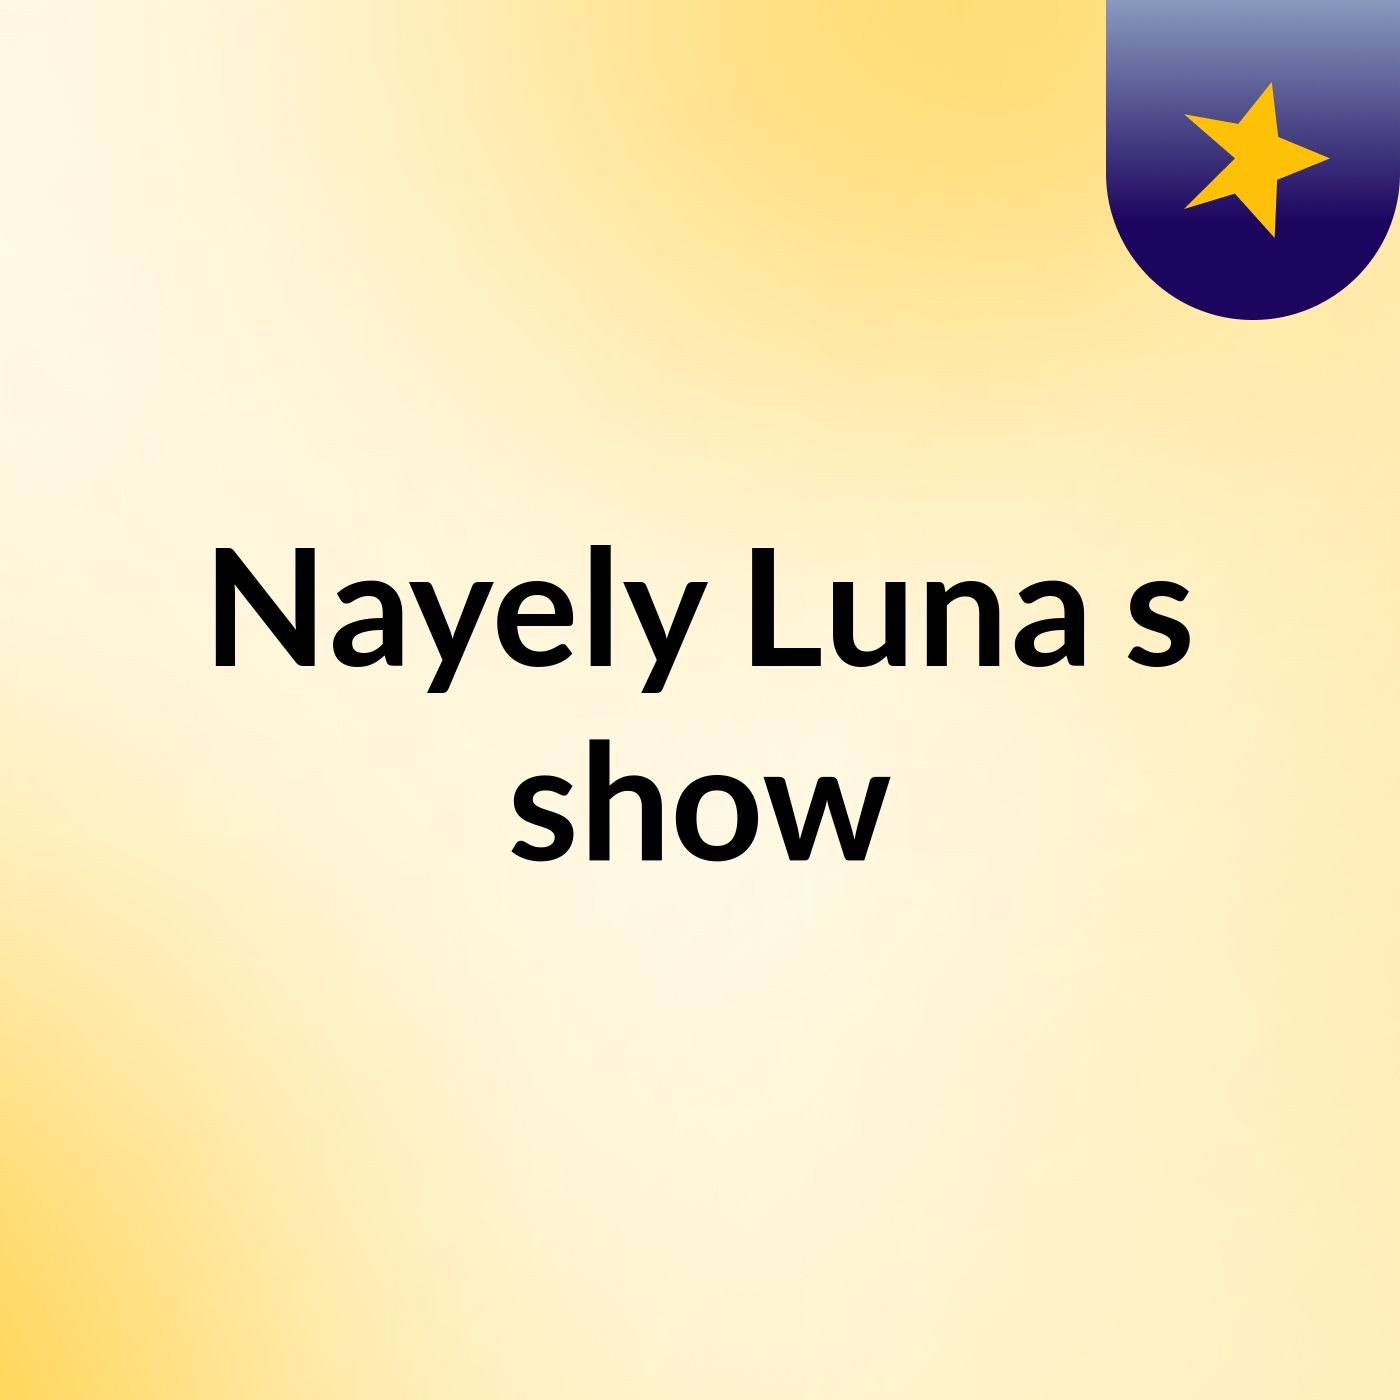 Nayely Luna's show